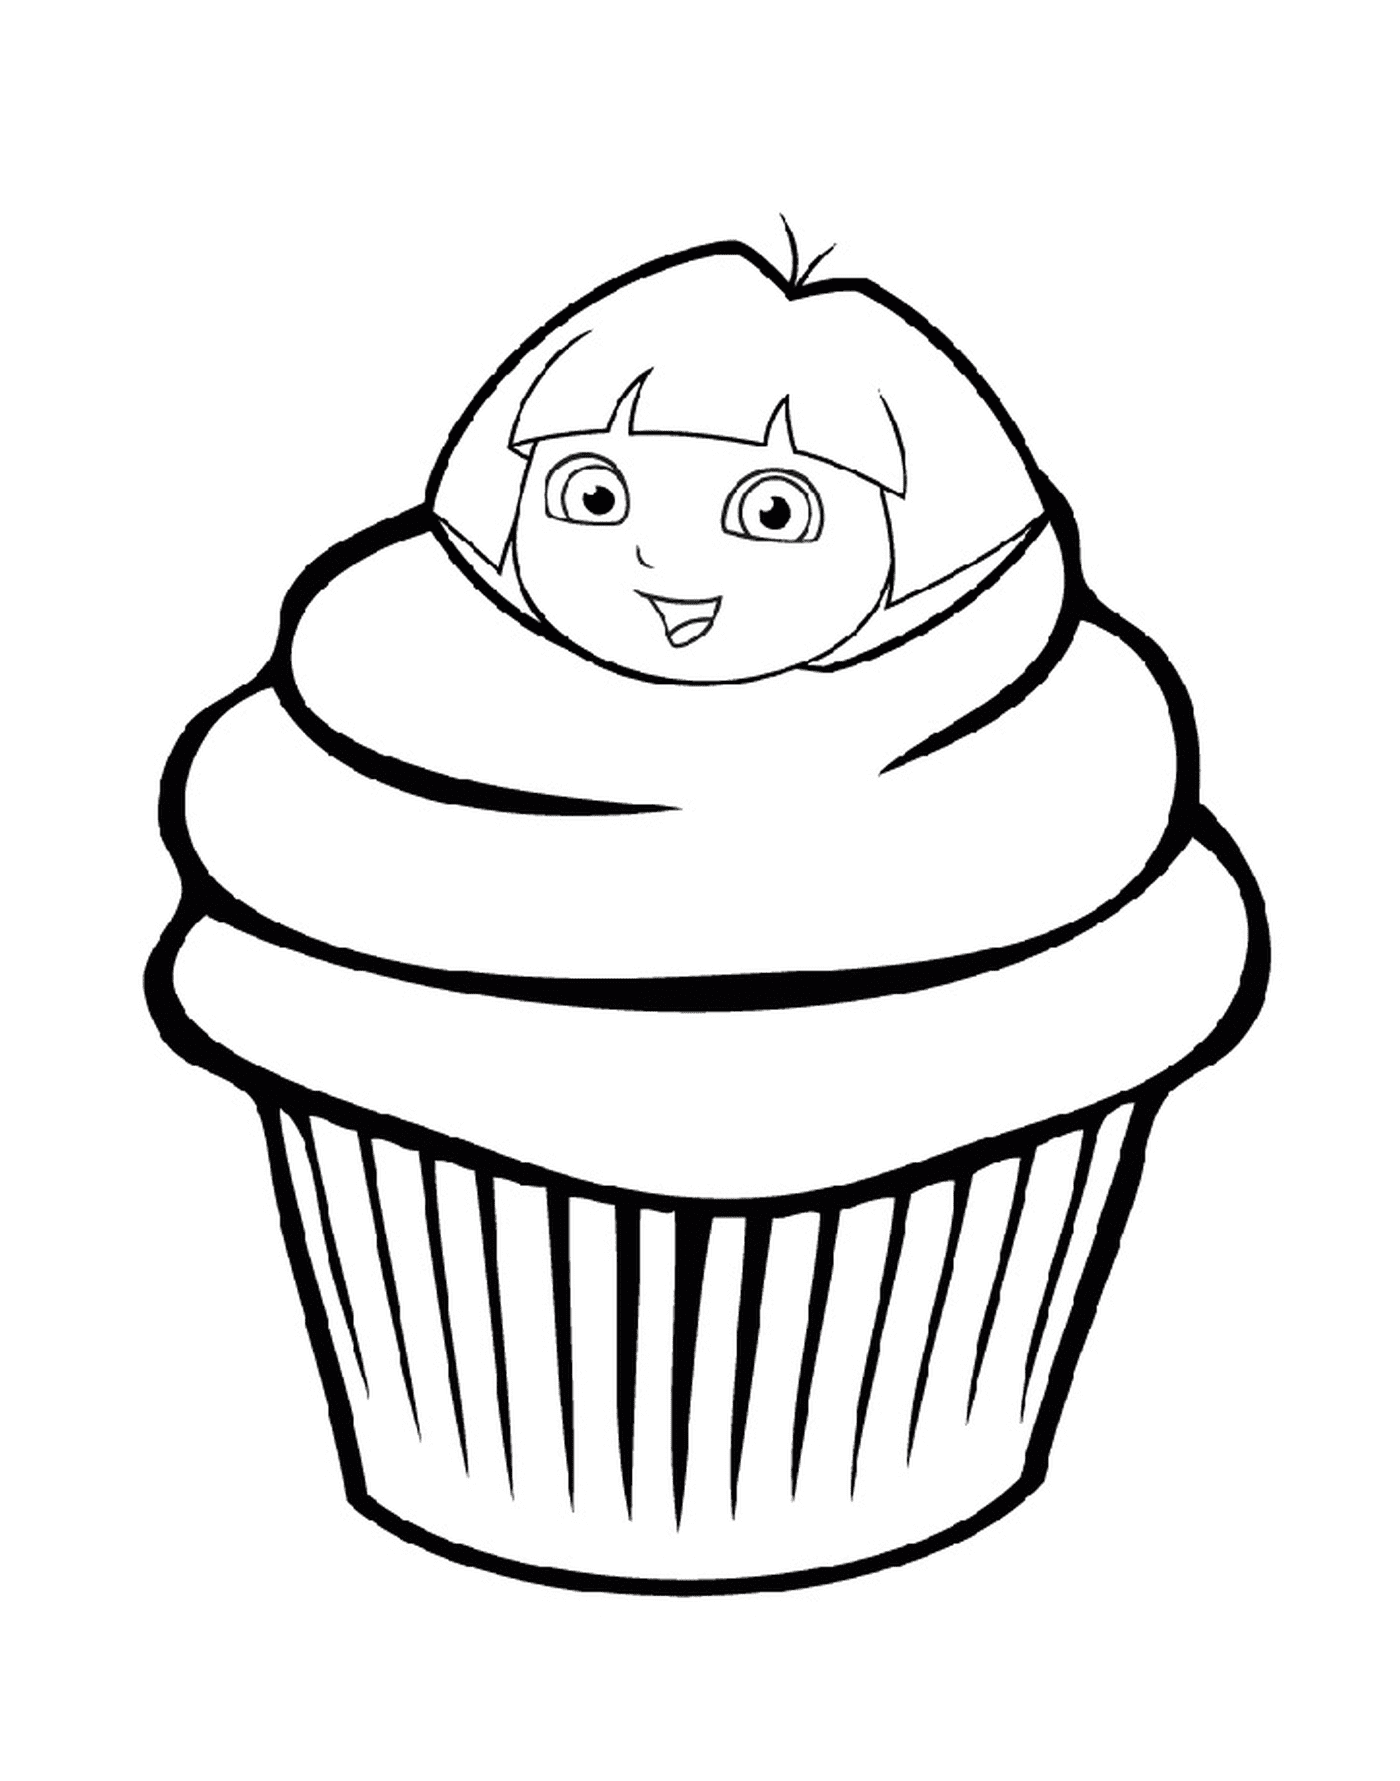  A cupcake from Dora the explorer 